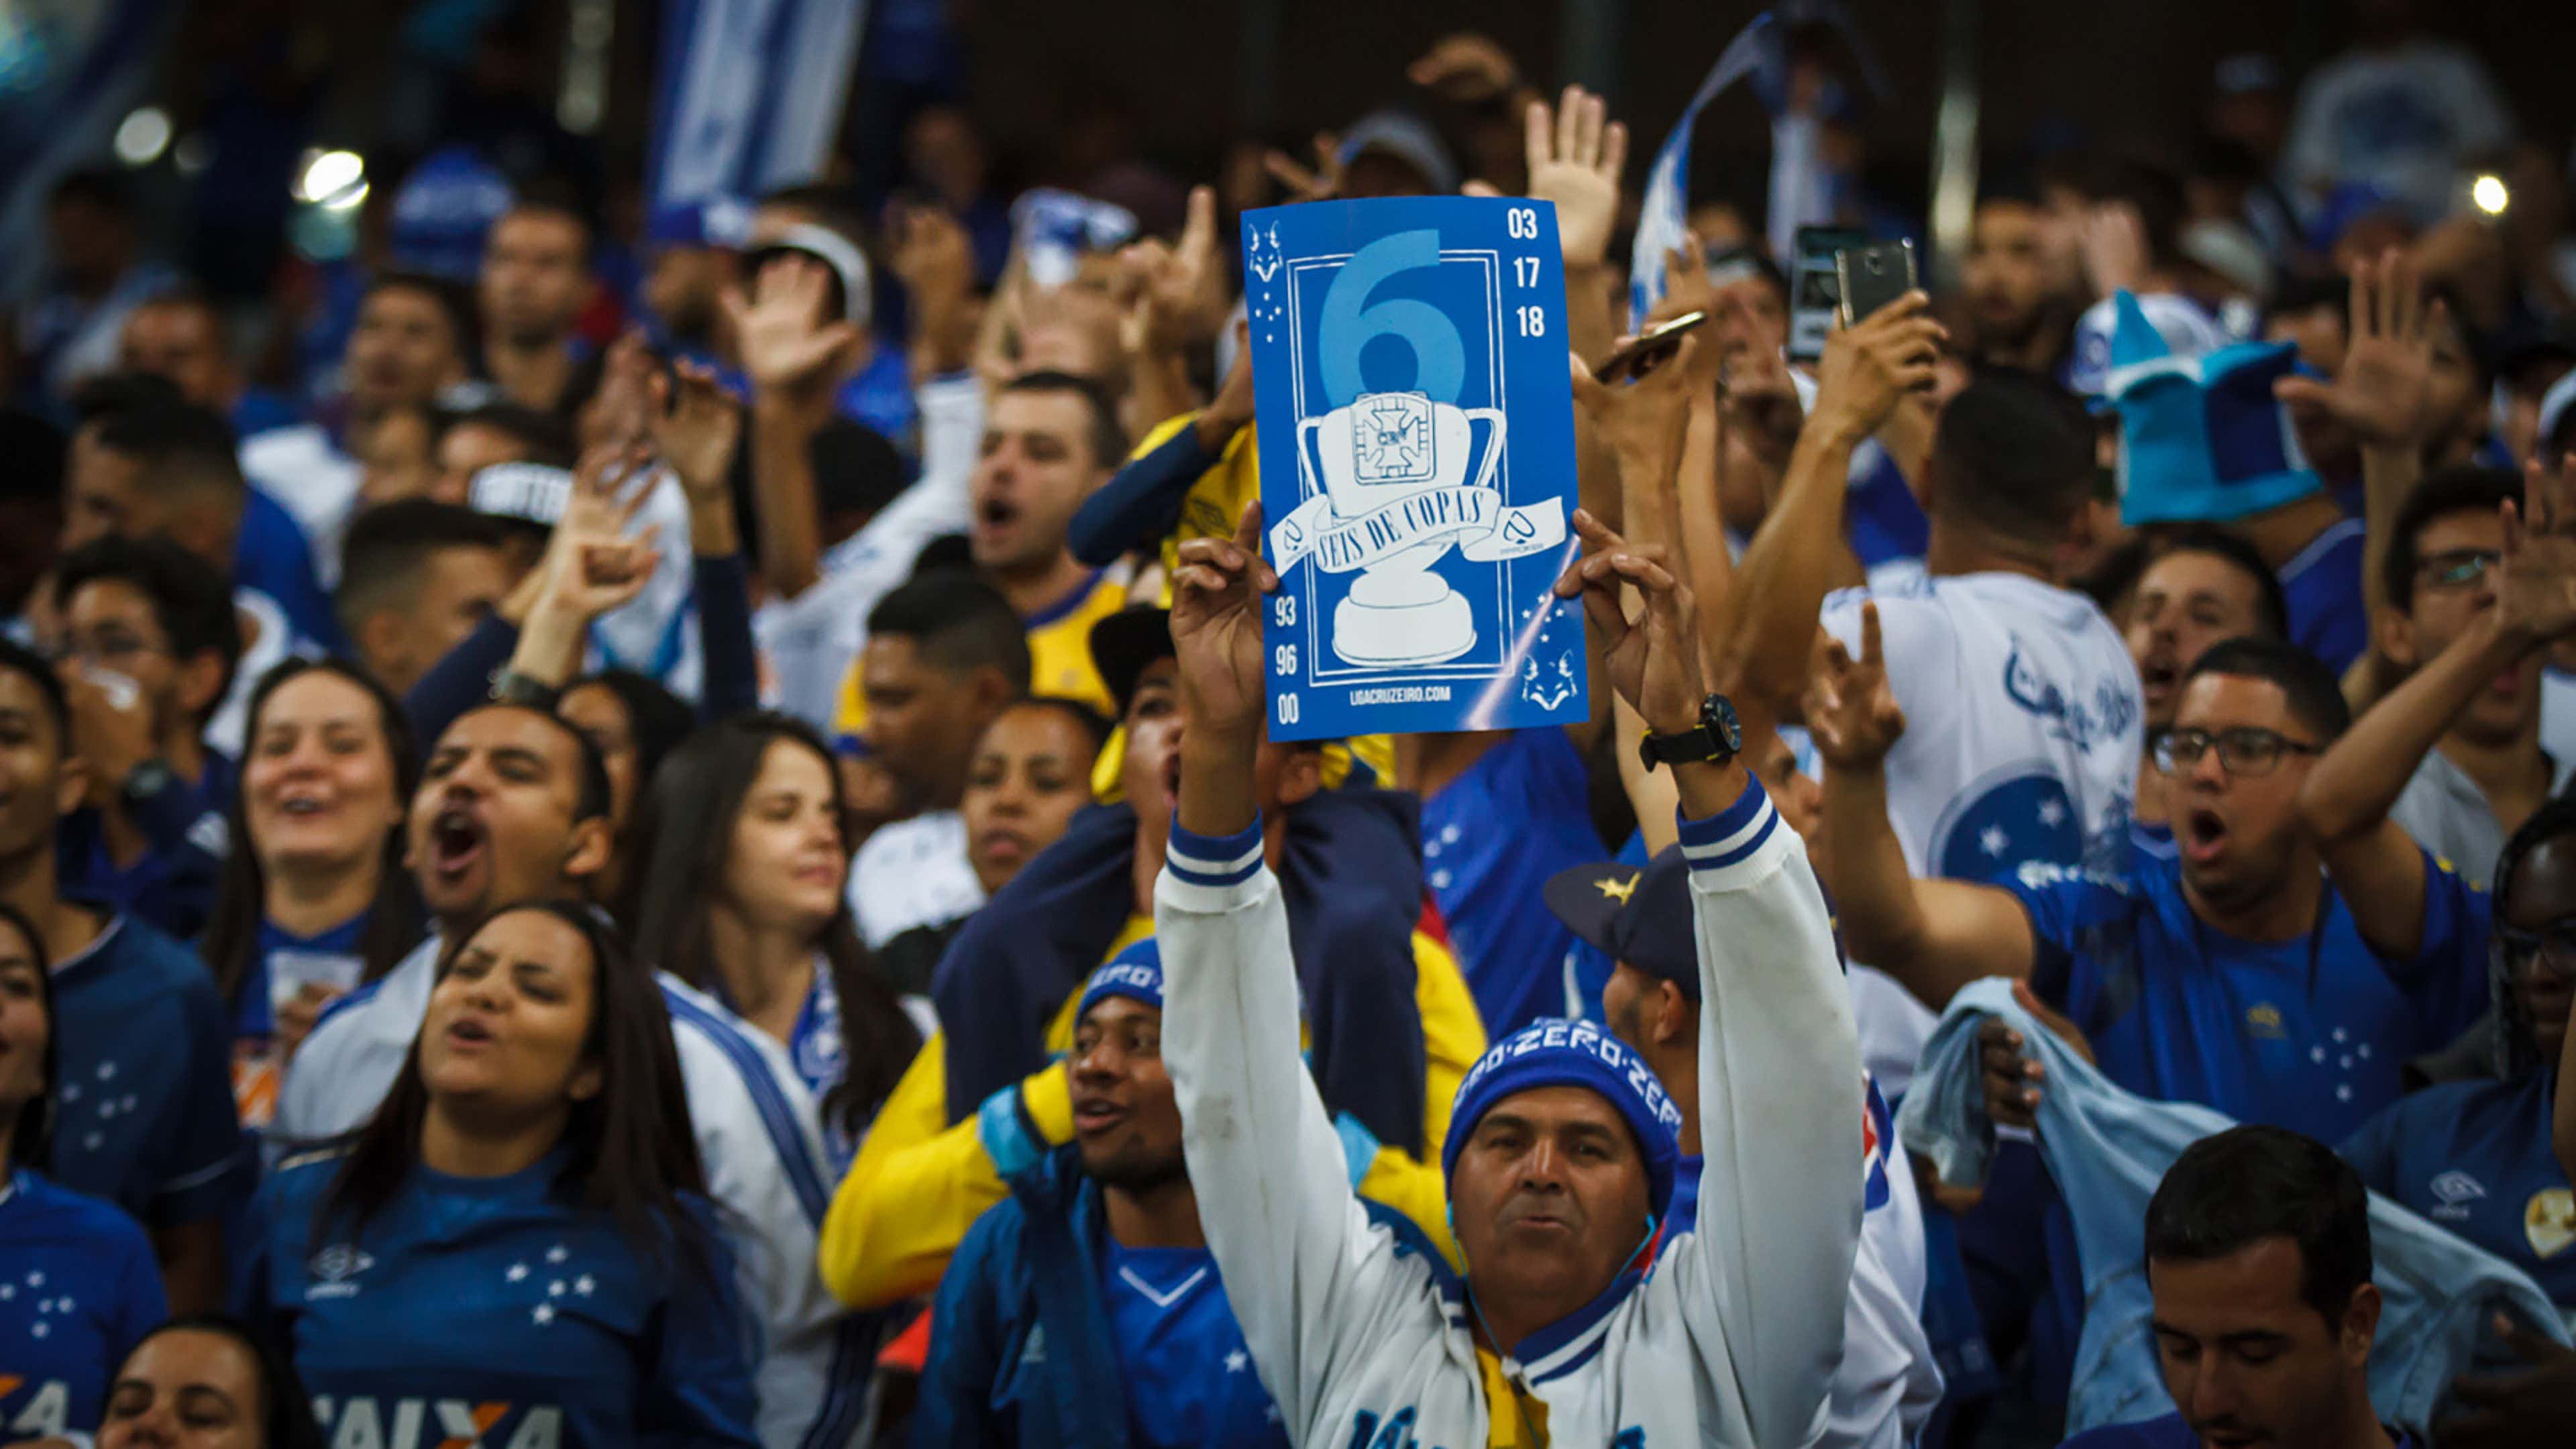 Qual canal vai passar o jogo do Cruzeiro hoje? Saiba onde assistir ao vivo  Cruzeiro x Athletic Club